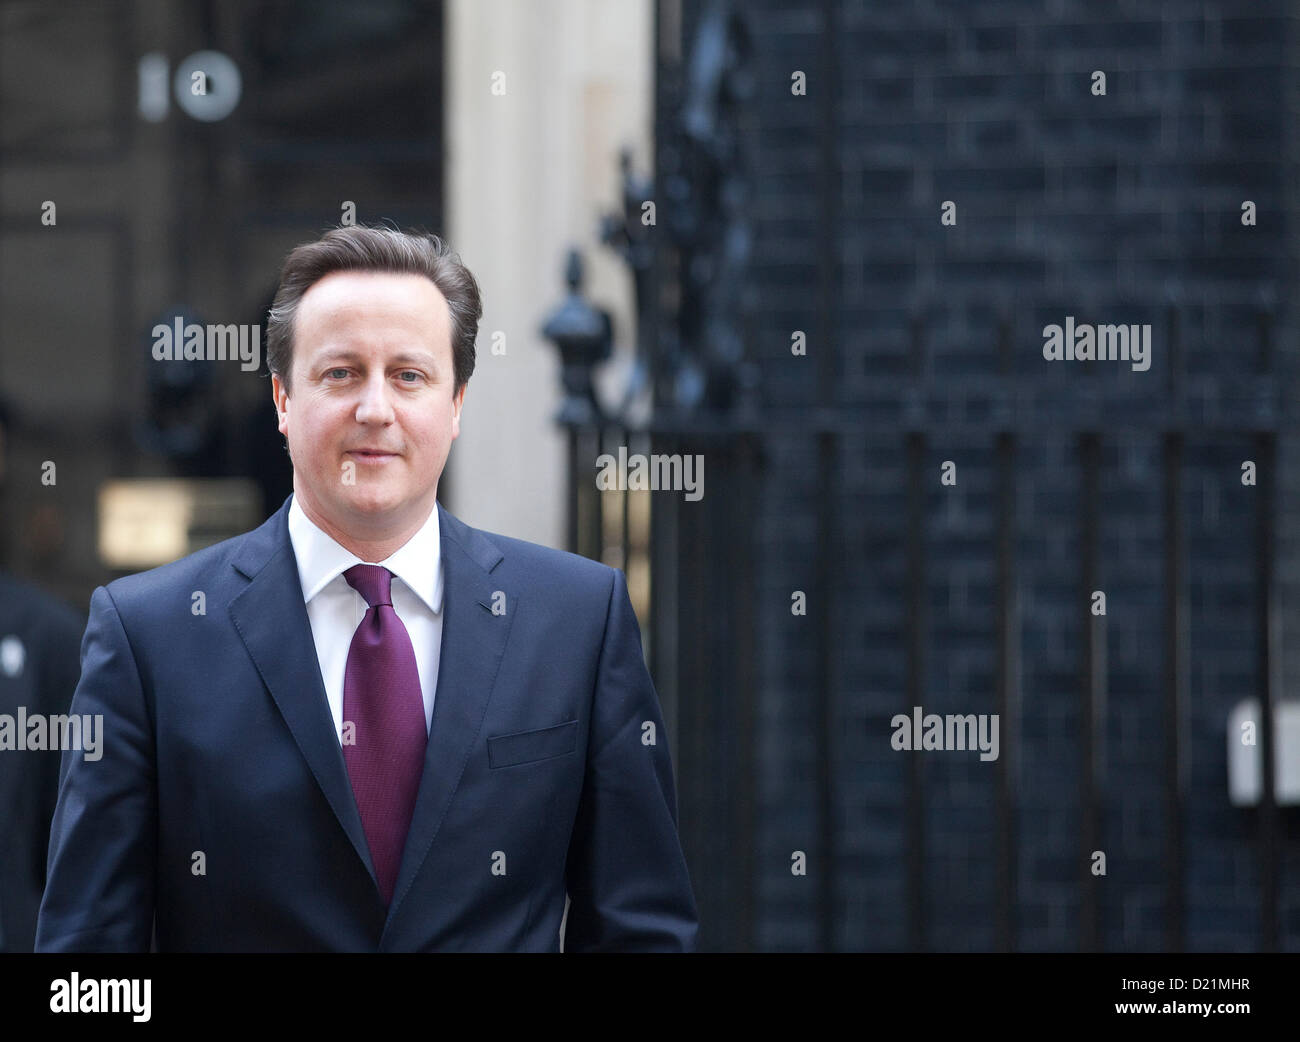 London, UK 11. Januar 2013 zeigt Bild verlassen Downing Street in London, Großbritannien Premierminister David Cameron. Bildnachweis: Jeff Gilbert/Alamy Live-Nachrichten Stockfoto